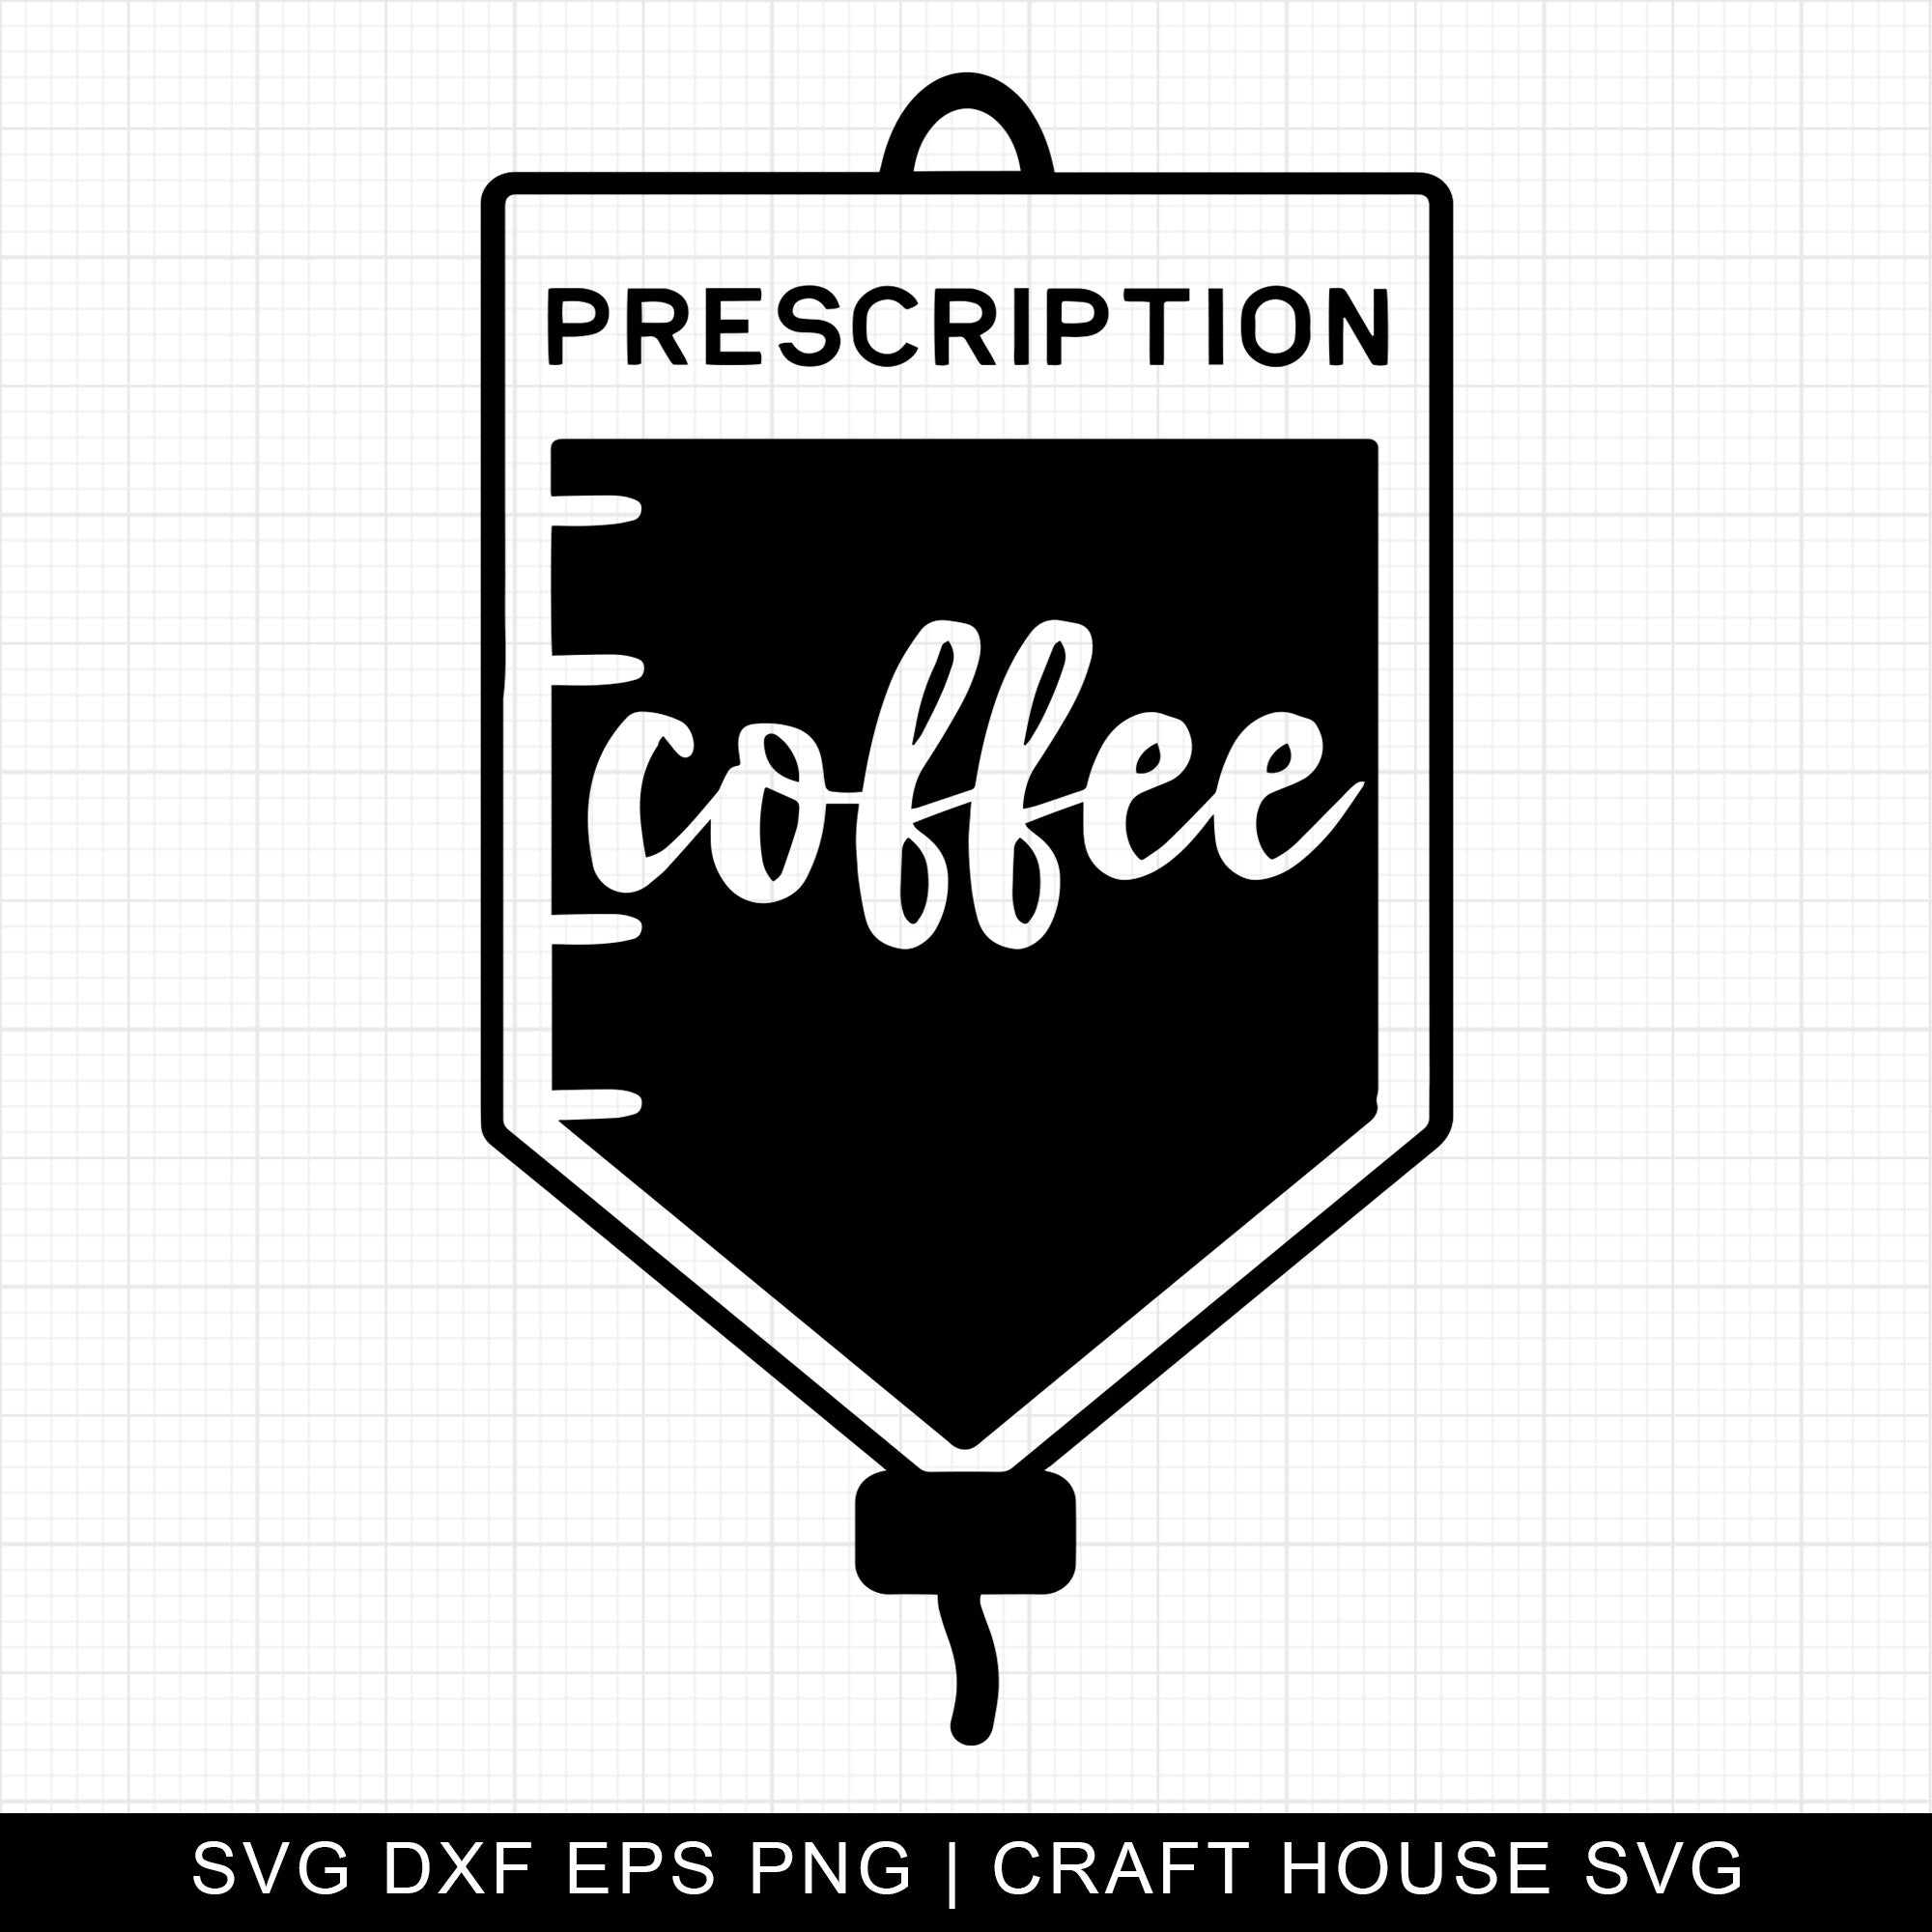 Prescription coffee SVG | M4F18